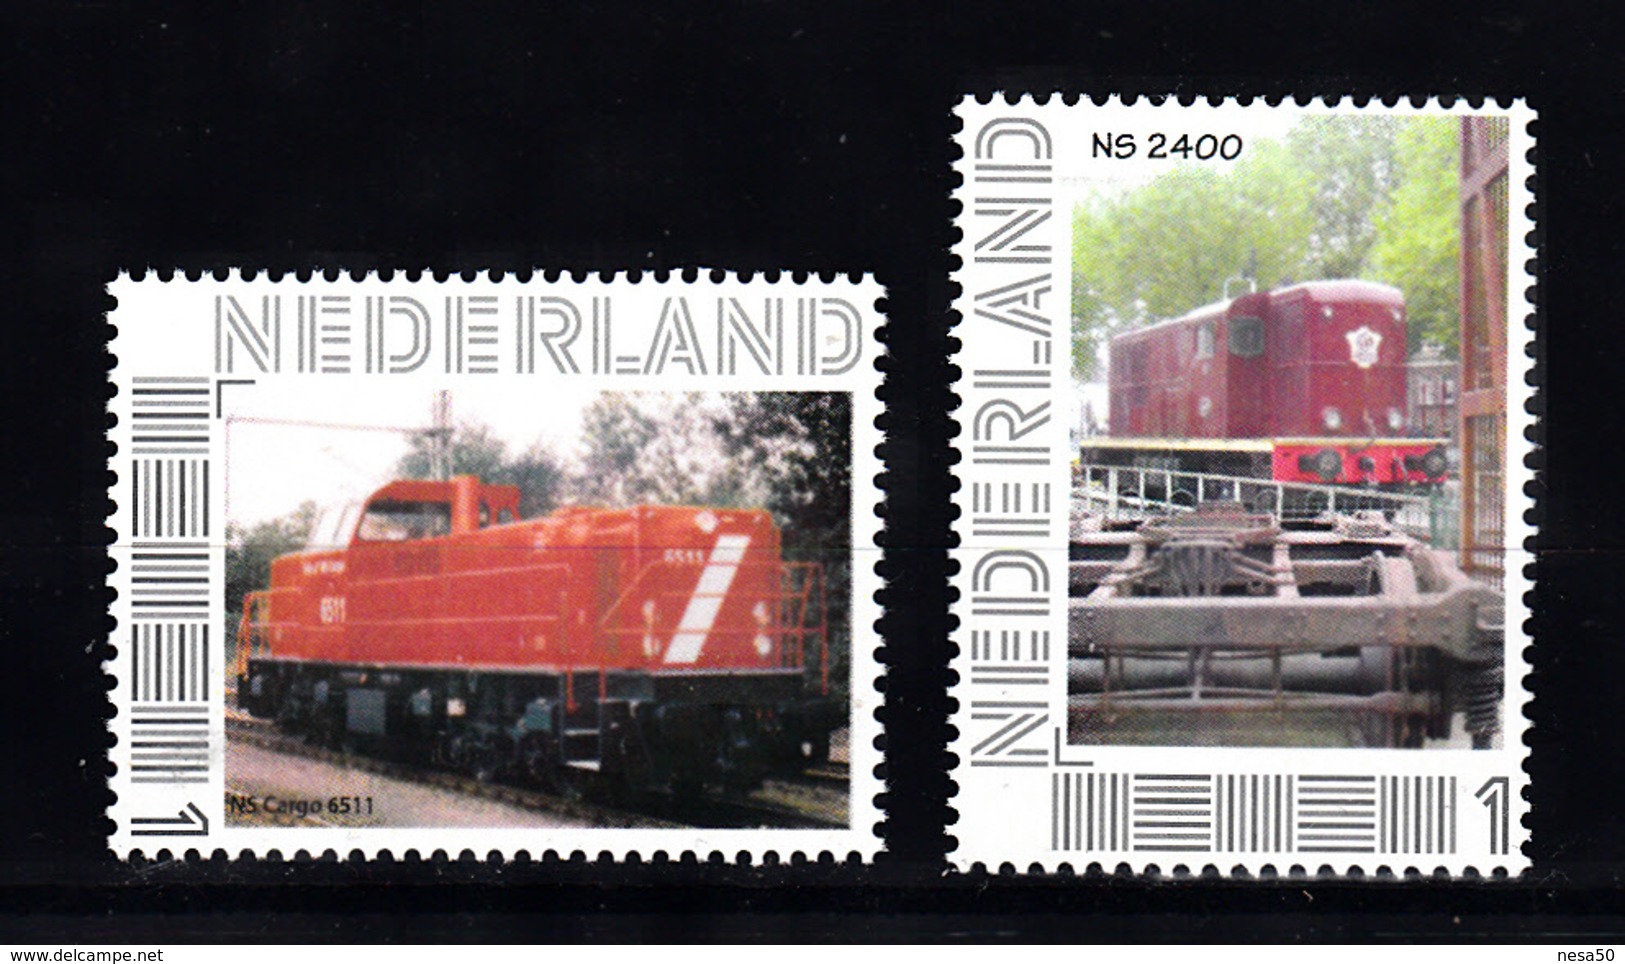 Trein, Train, Locomotive, Railway: Persoonlijke Zegel: NS Cargo 6511 + NS 2400 - Trenes